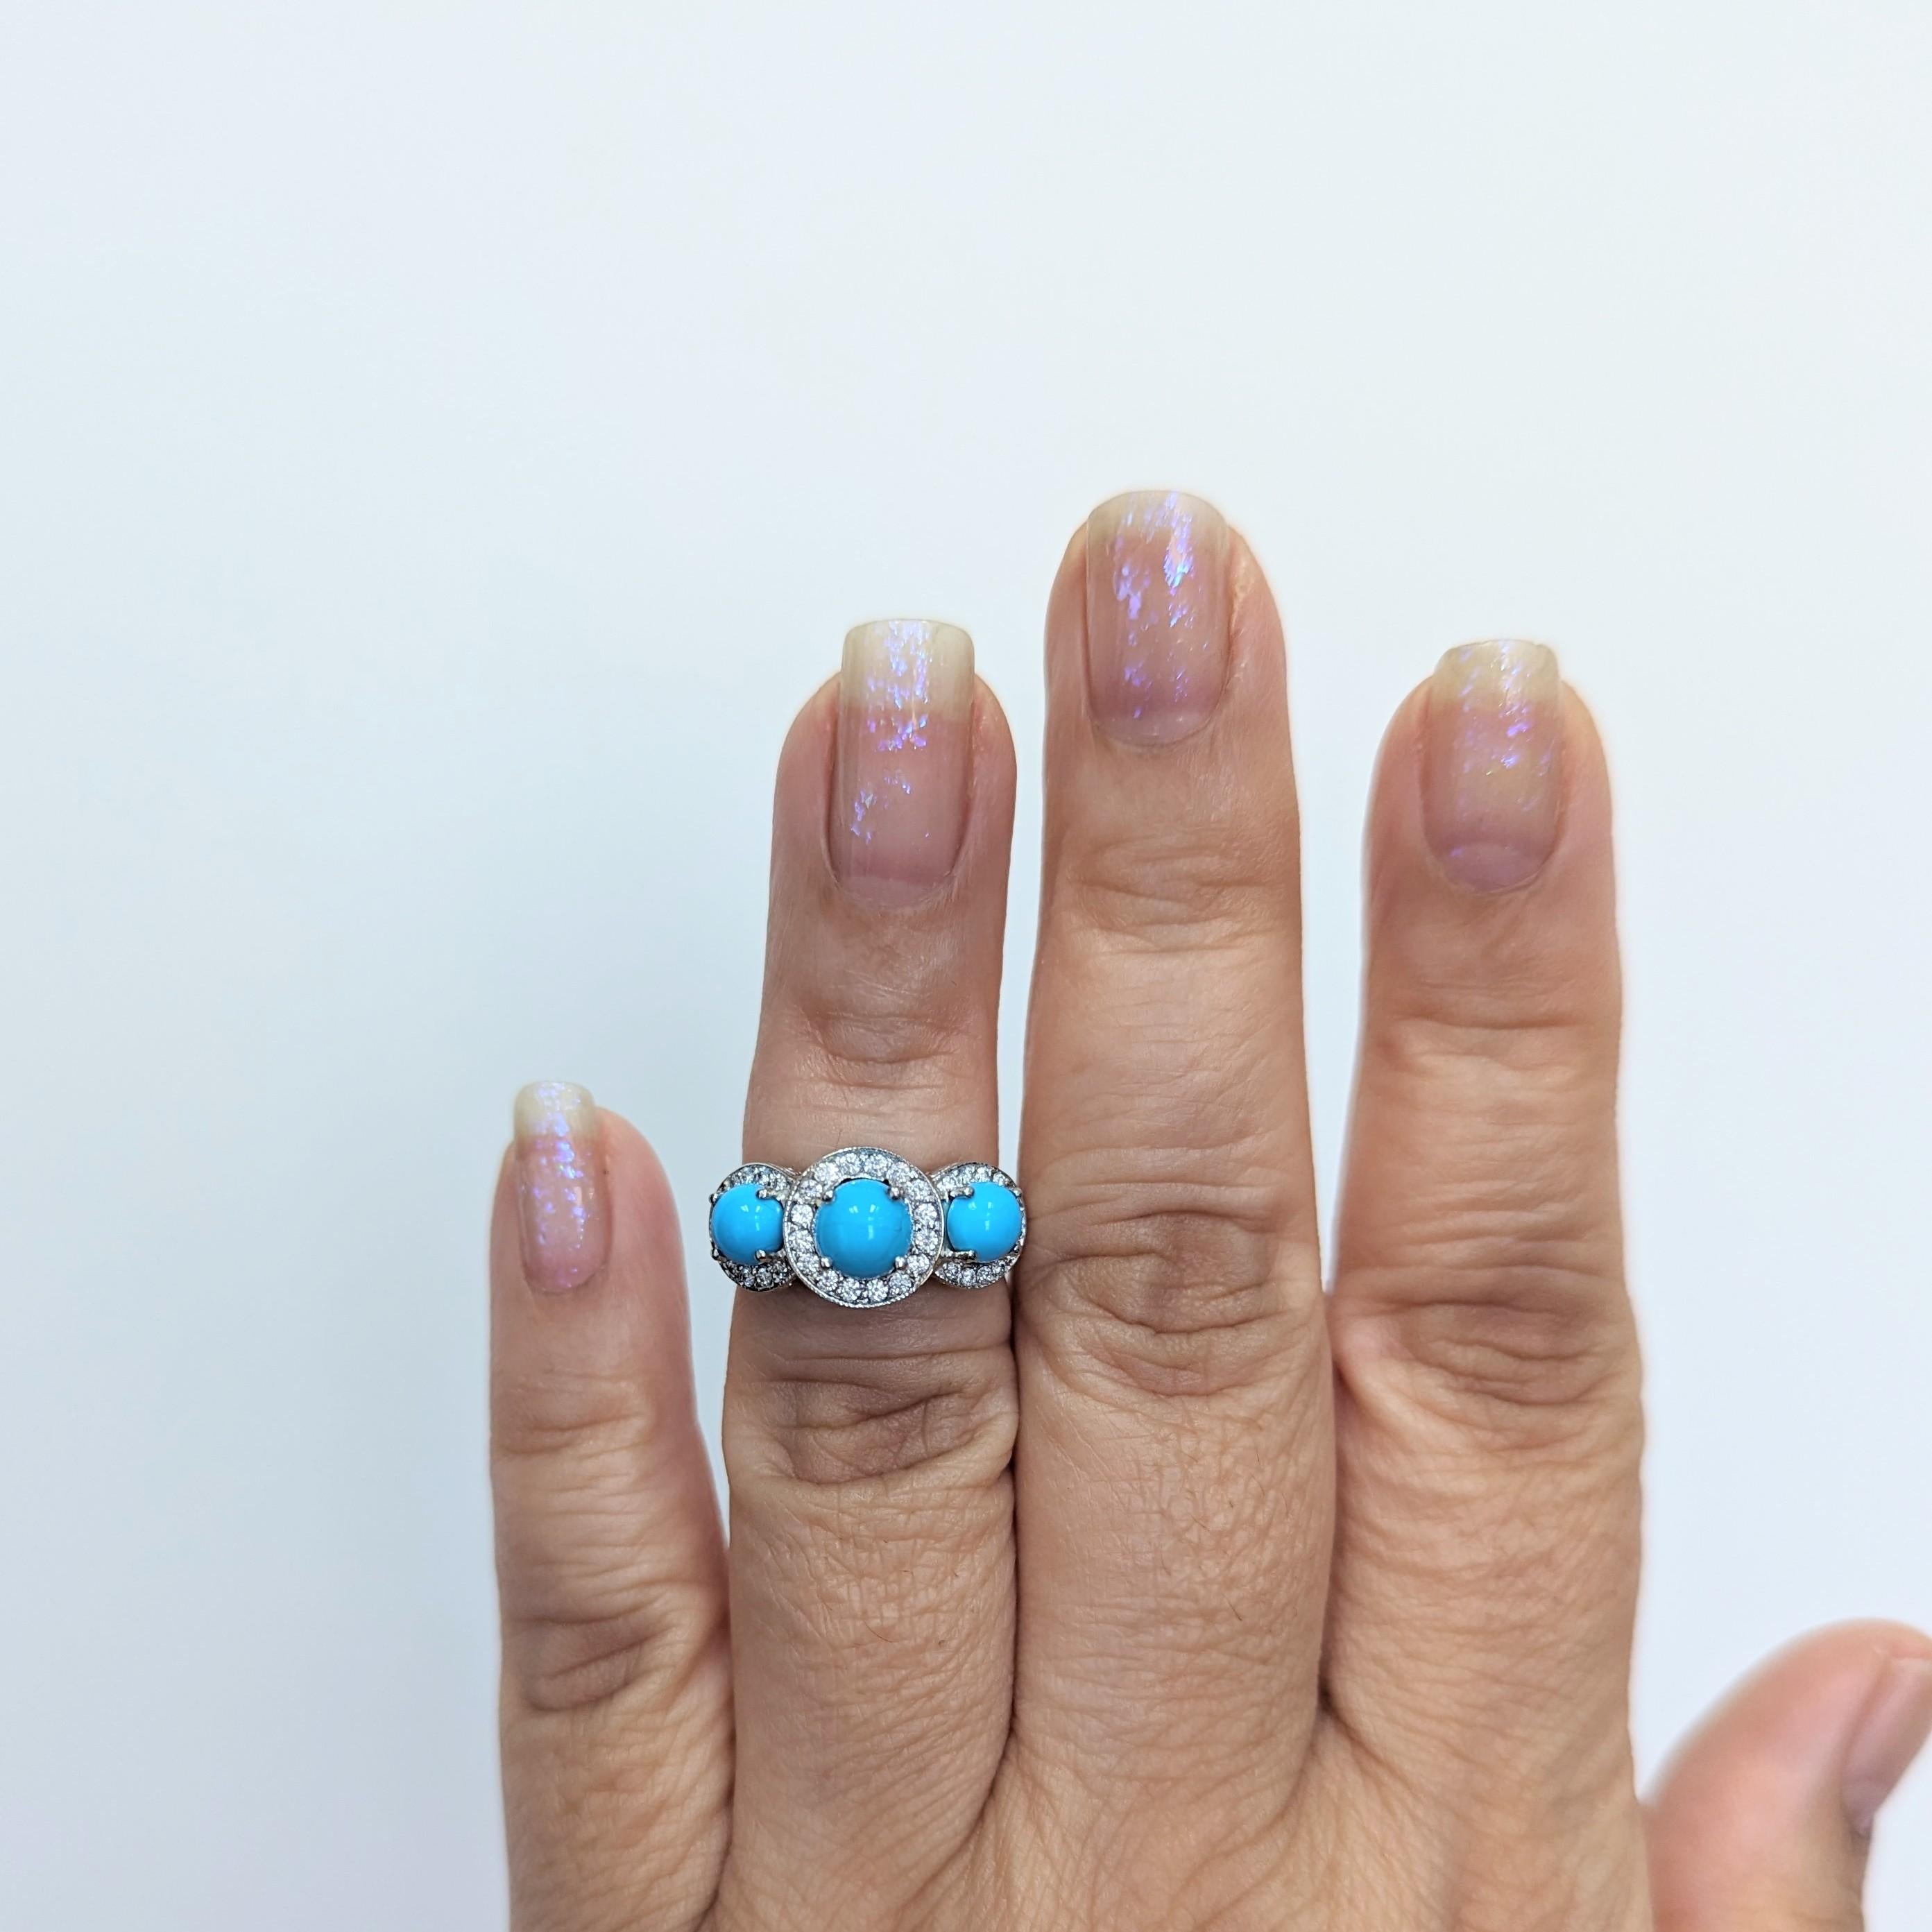 Schöne Türkis runden Cabochon und weißen Diamanten drei Stein-Ring.  Handgefertigt in Platin.  Ringgröße 5,75.